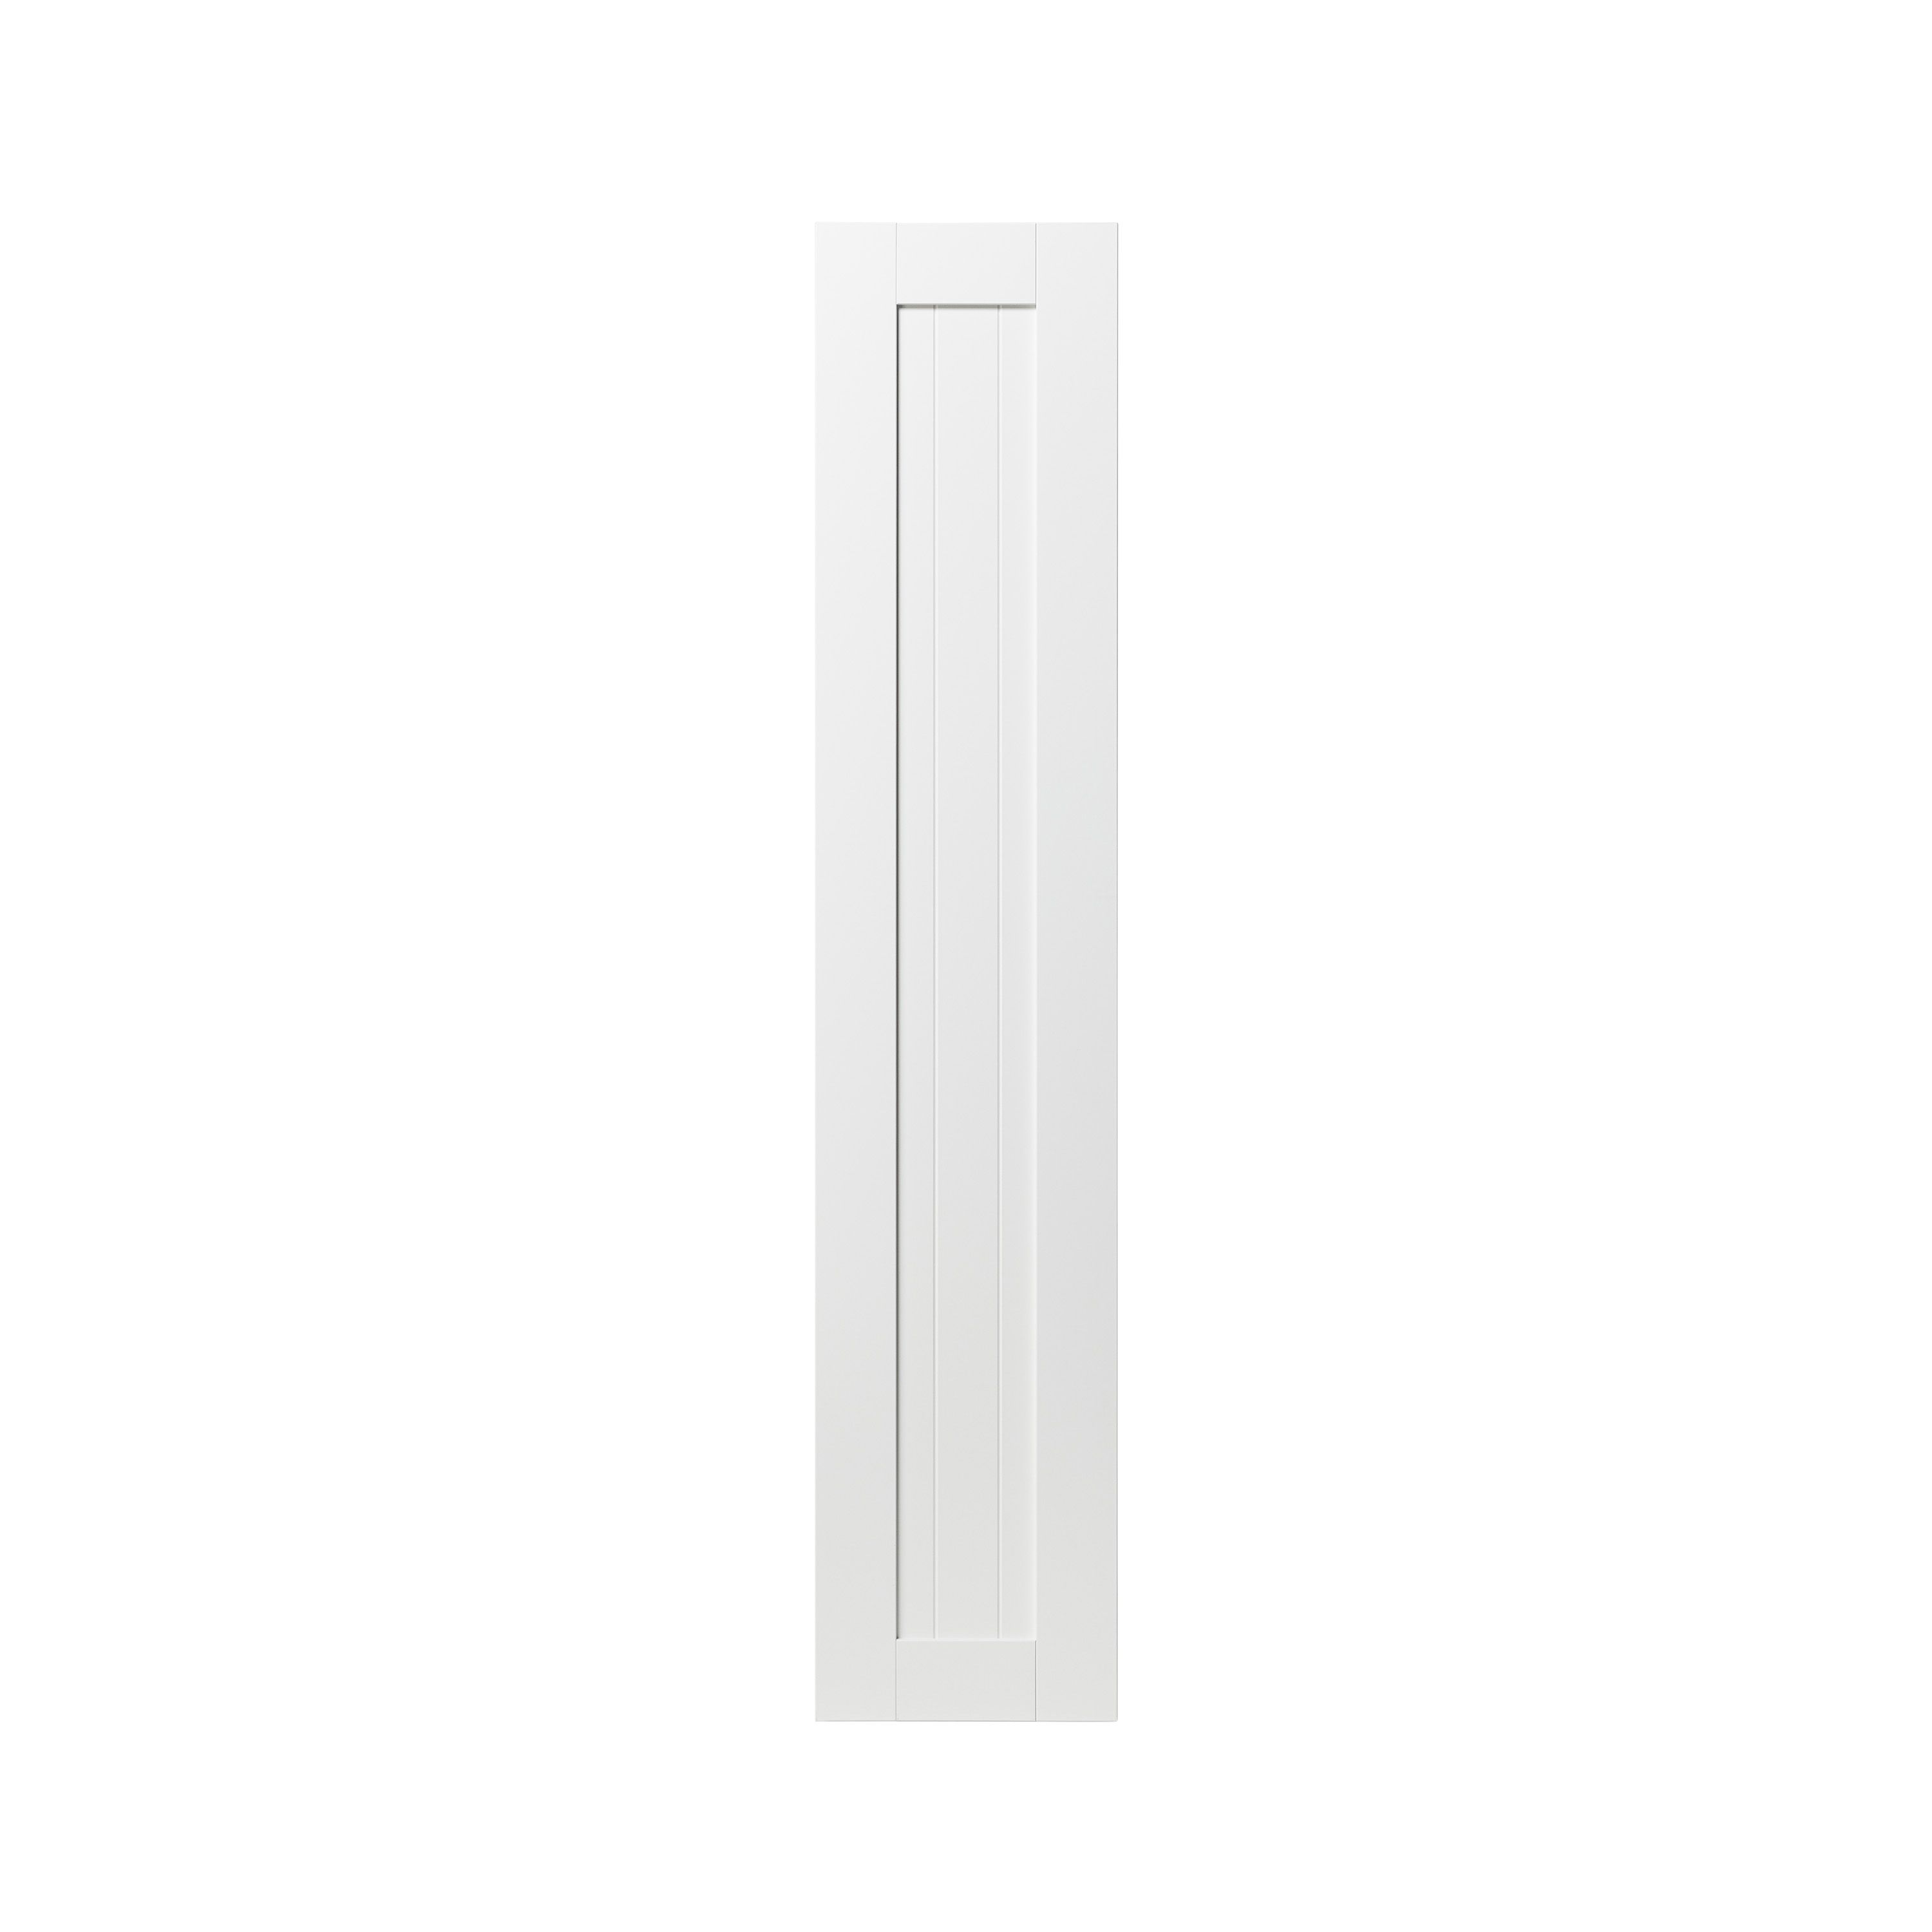 GoodHome Alpinia Matt white tongue & groove shaker Tall larder Cabinet door (W)300mm (H)1467mm (T)18mm